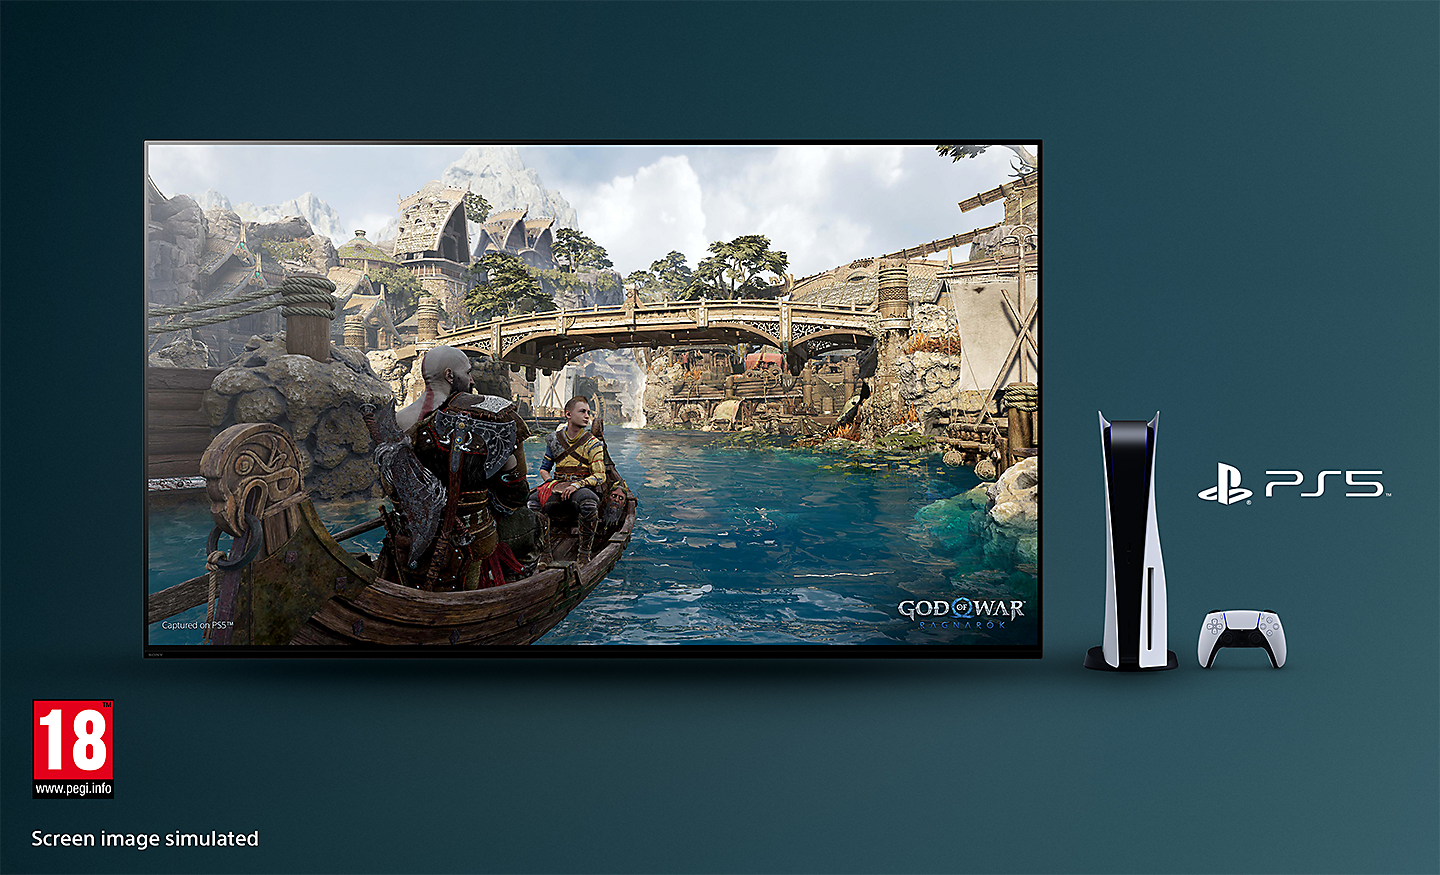 Televizor BRAVIA cu o captură din God of War: Ragnarok arătând o barcă pe râu și un pod în fundal, cu o consolă PS5™, controler și logo PS5™ în dreapta televizorului